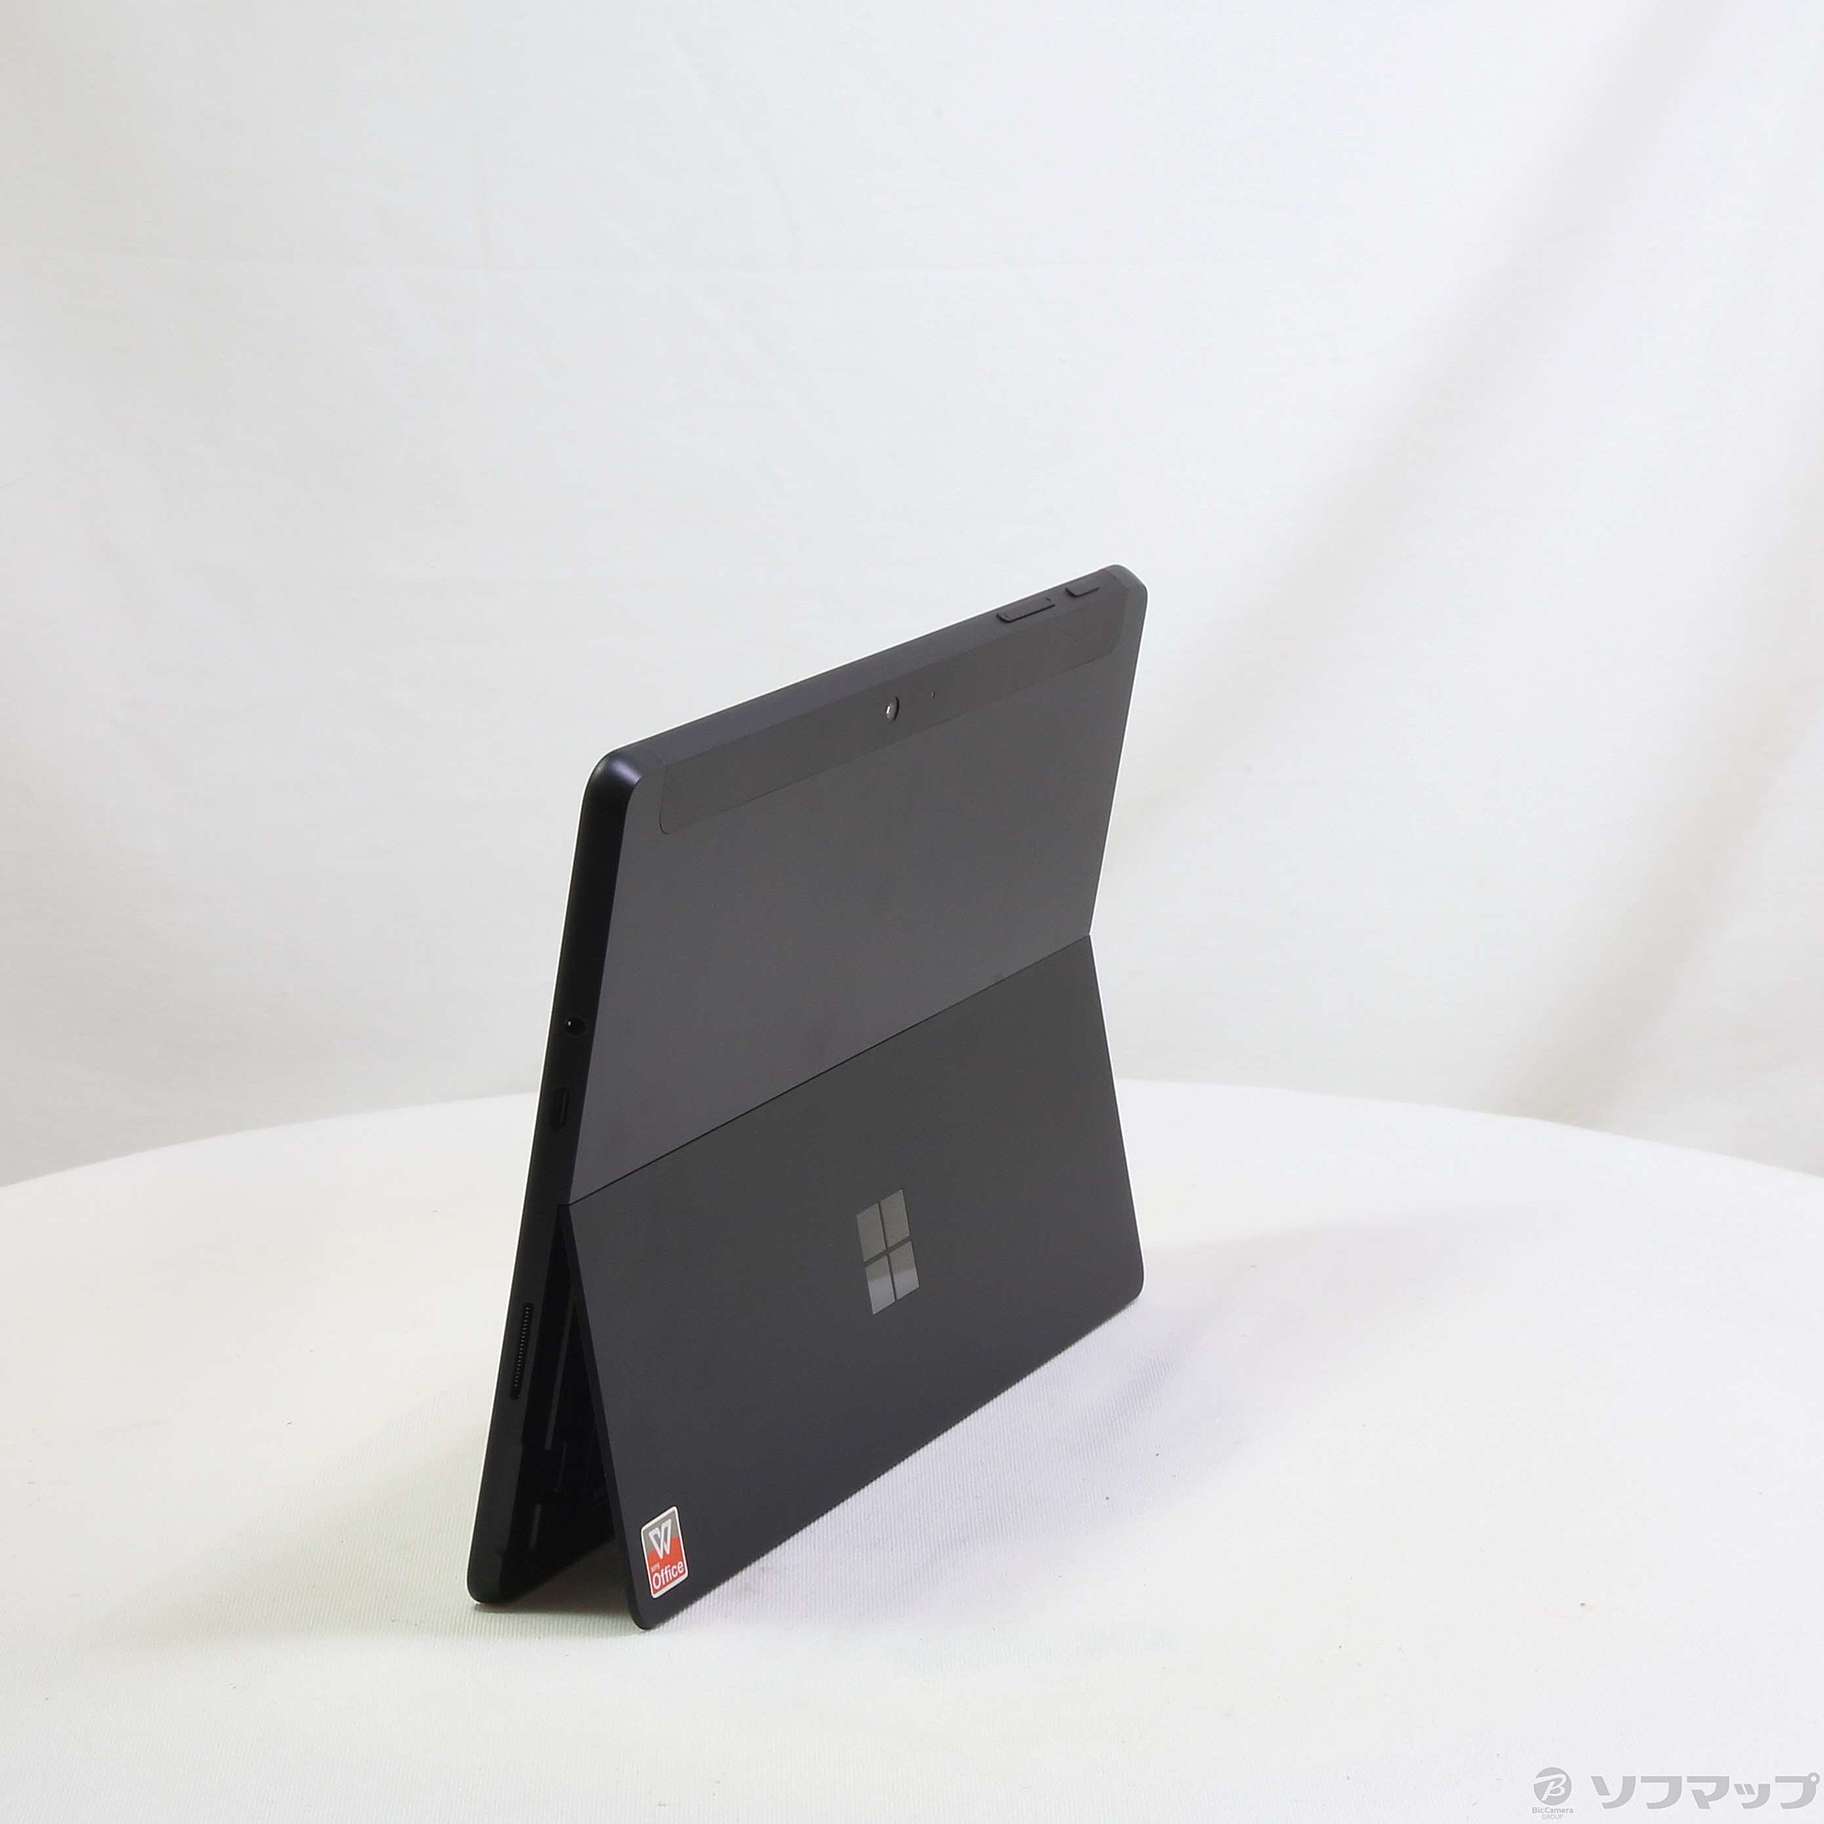 【ほぼ新品】Surface Go 3 8VA-00030 ブラック